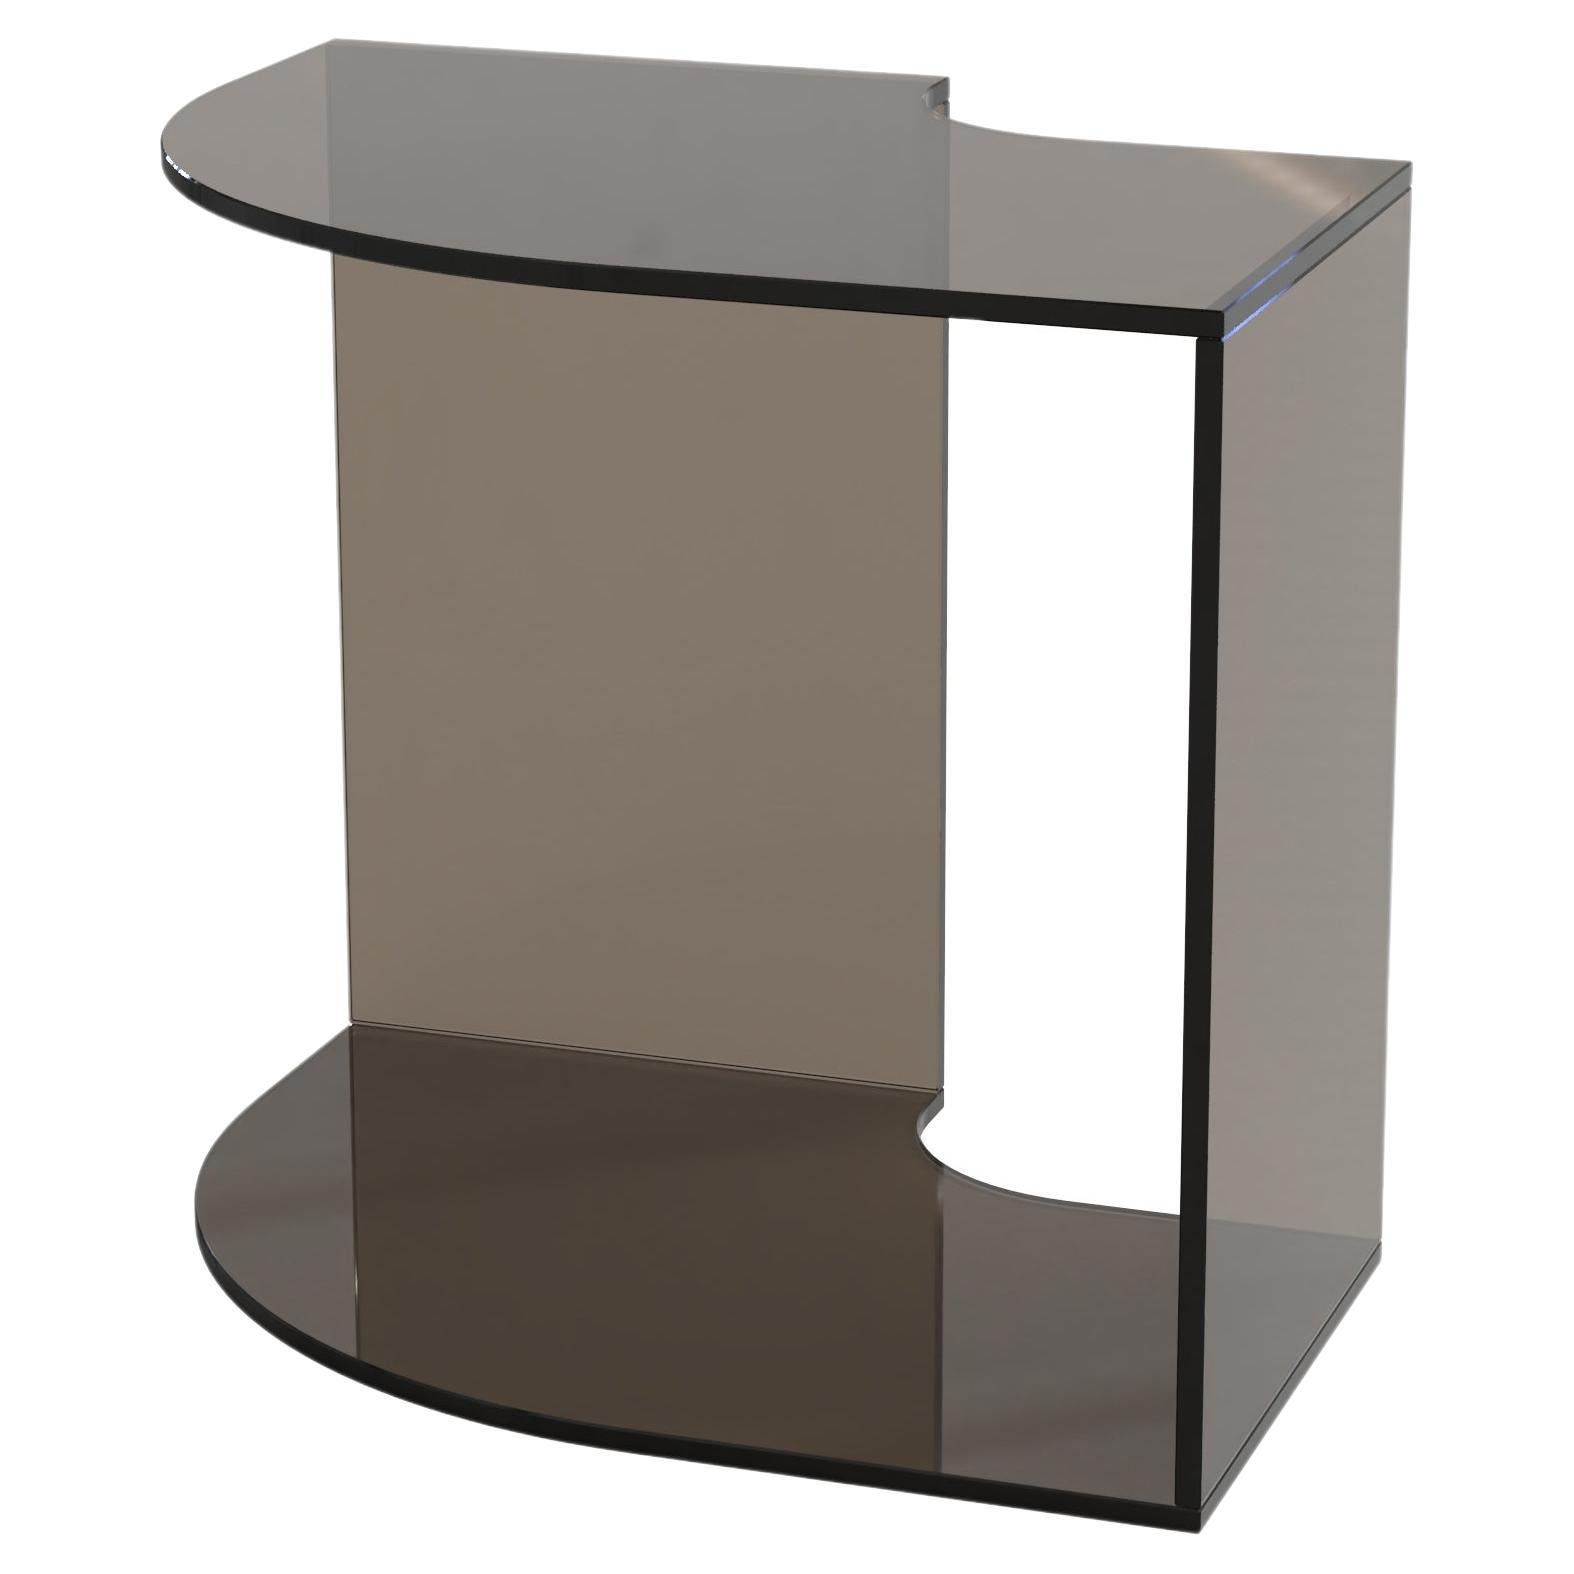 Contemporary Limited Edition Bronze Glass Table, Quarter V1 by Edizione Limitata For Sale